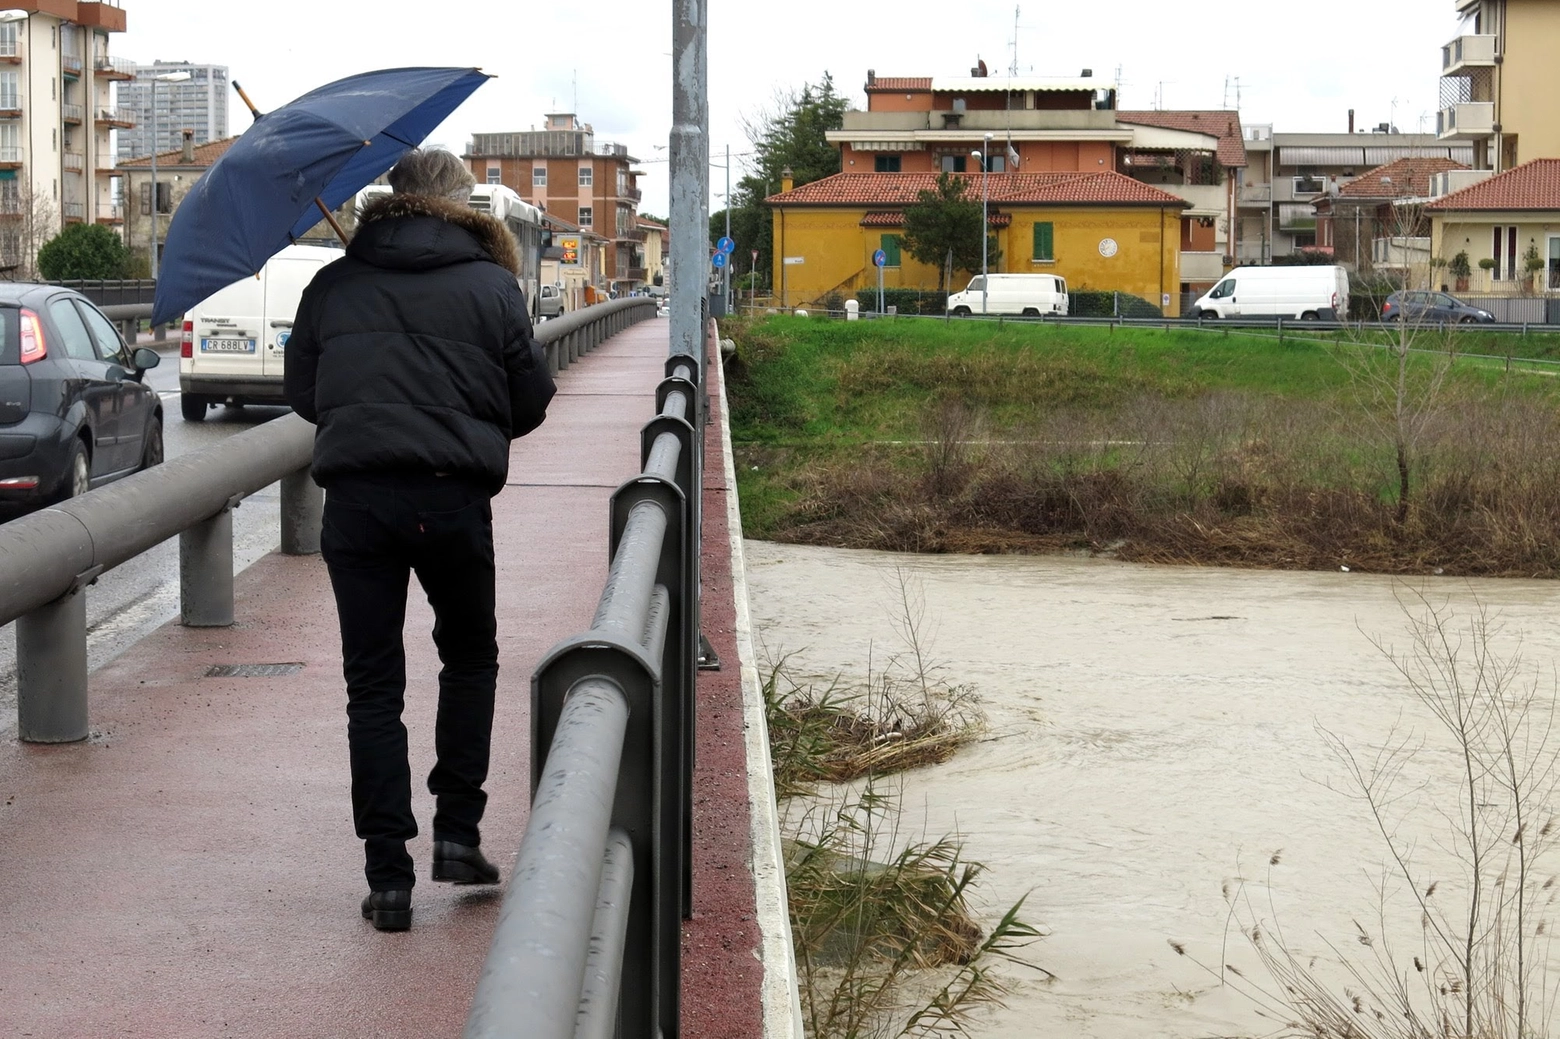 Acqua alta nei canali a Rimini a causa del maltempo